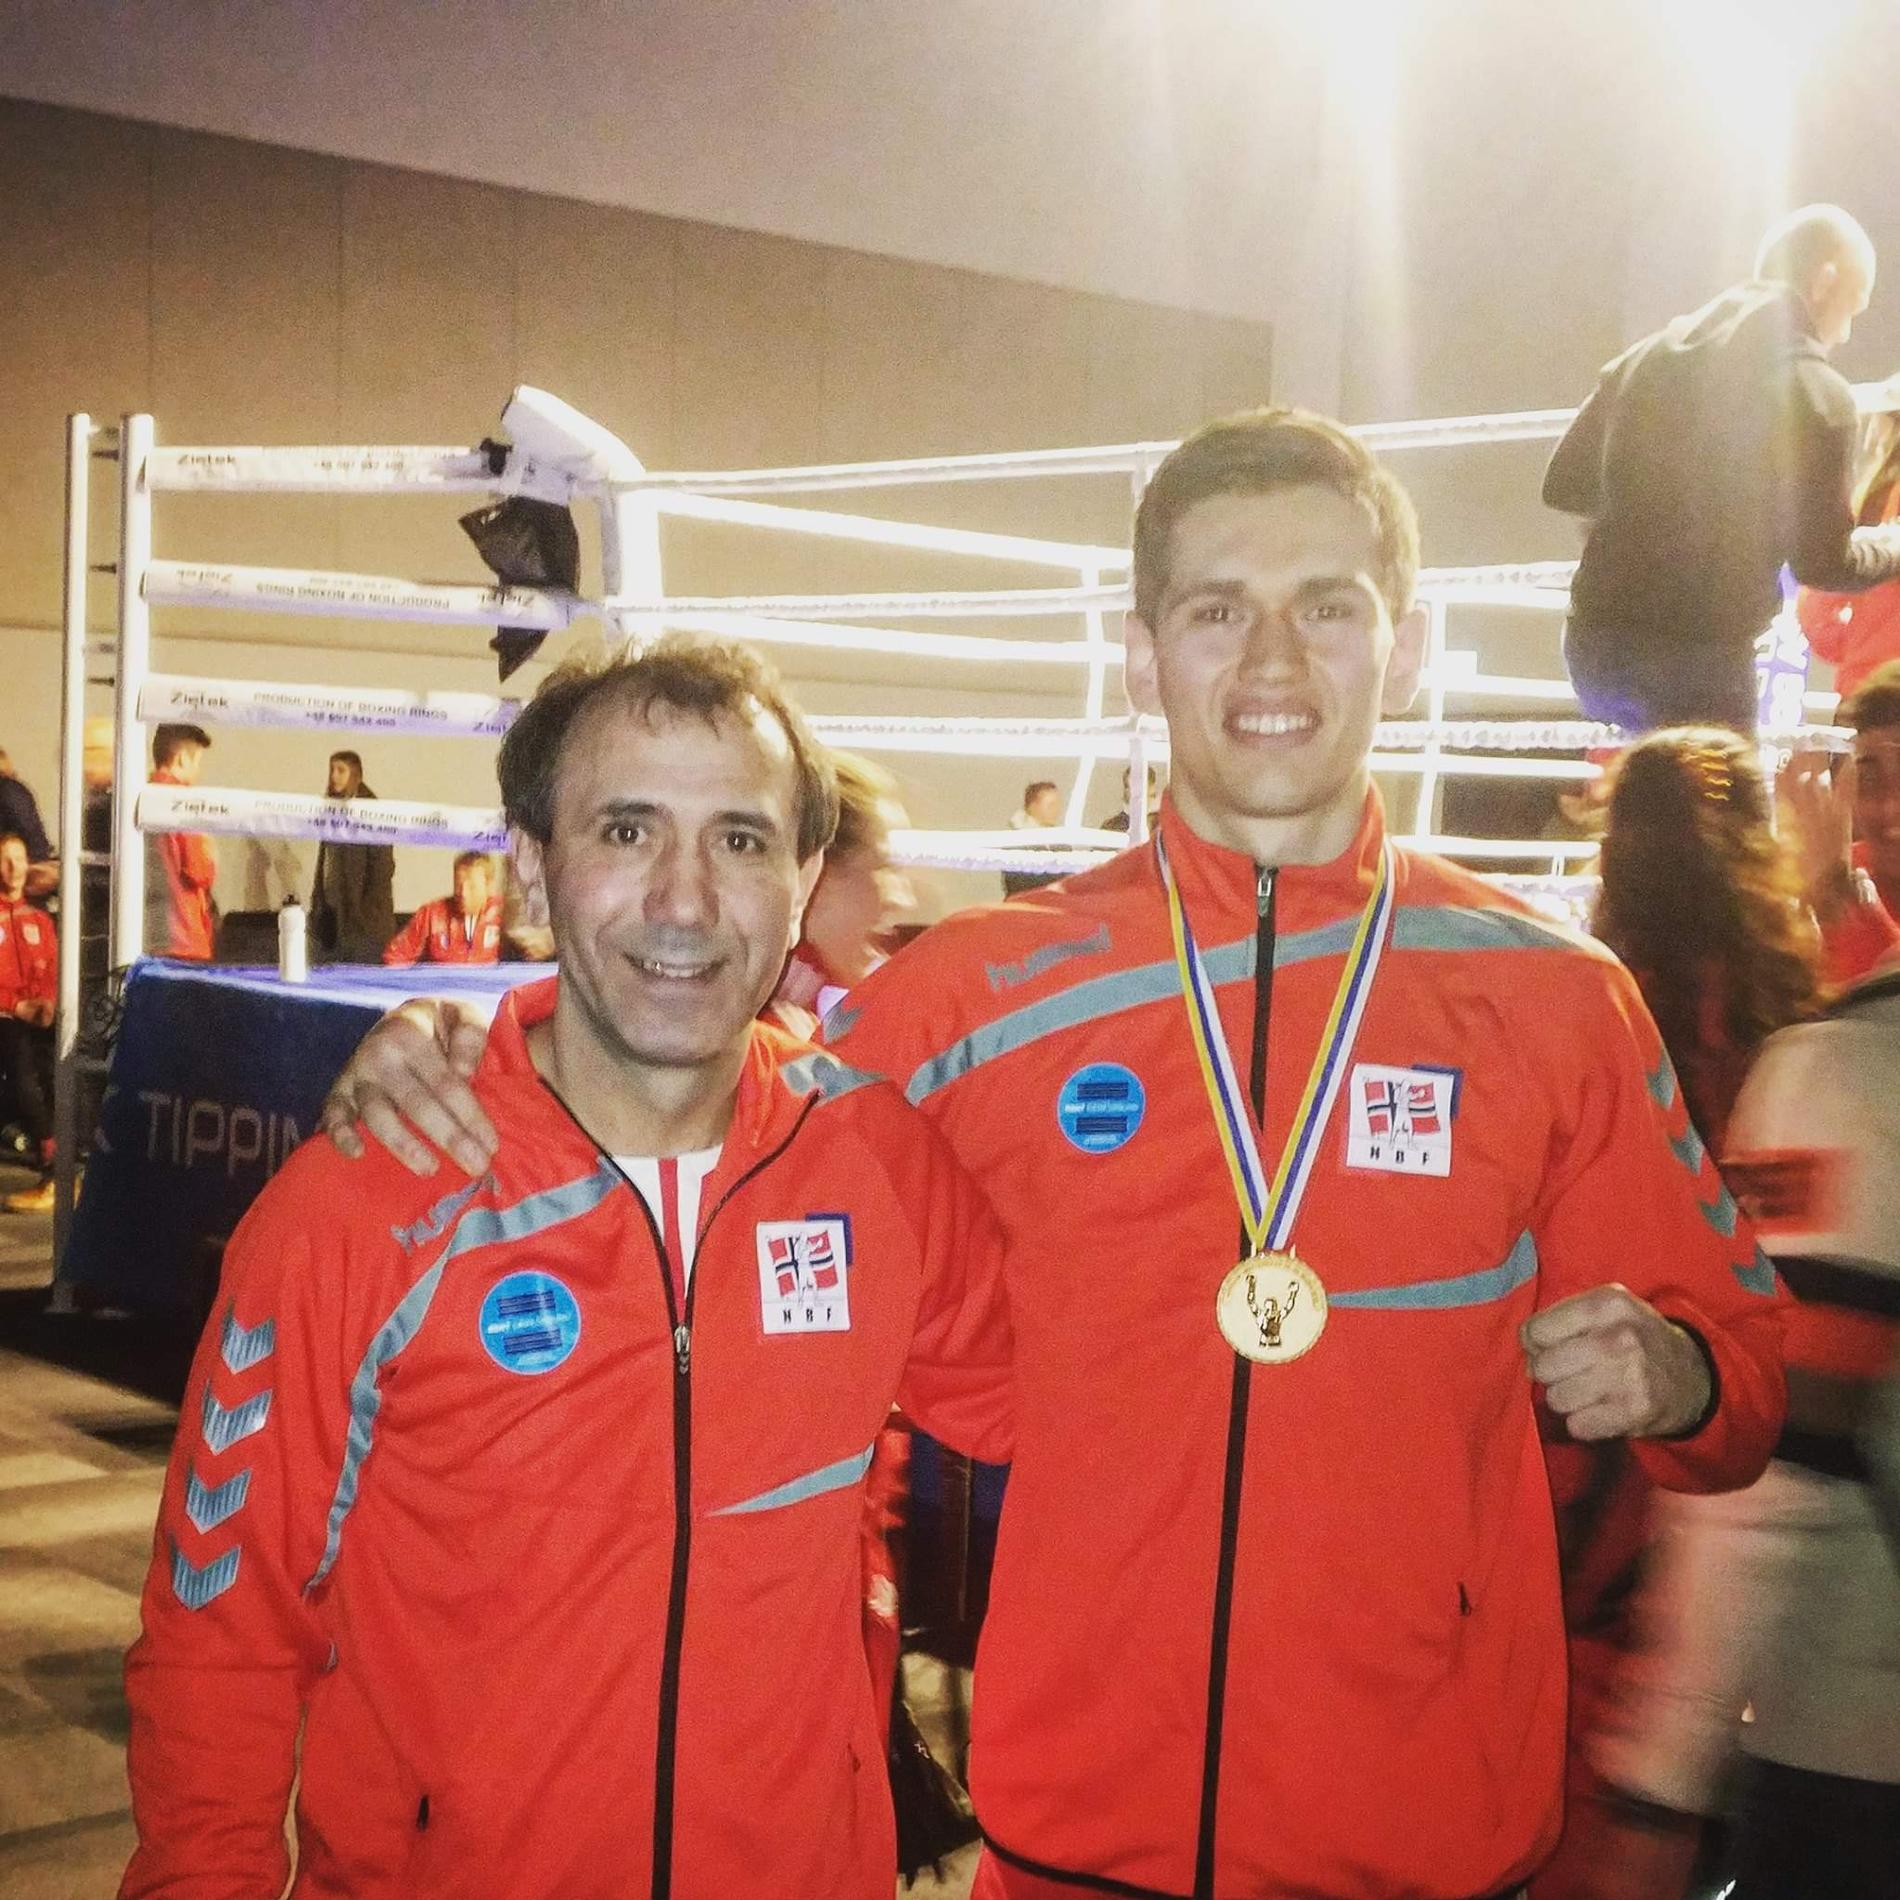 Mindaugas poserer stolt med gullmedaljen han fikk under Nordisk mesterskap i år. Ved siden av står hovedtreneren Zyandi Arsaev, som er tidligere russisk og tsjetsjensk mester i boksing.